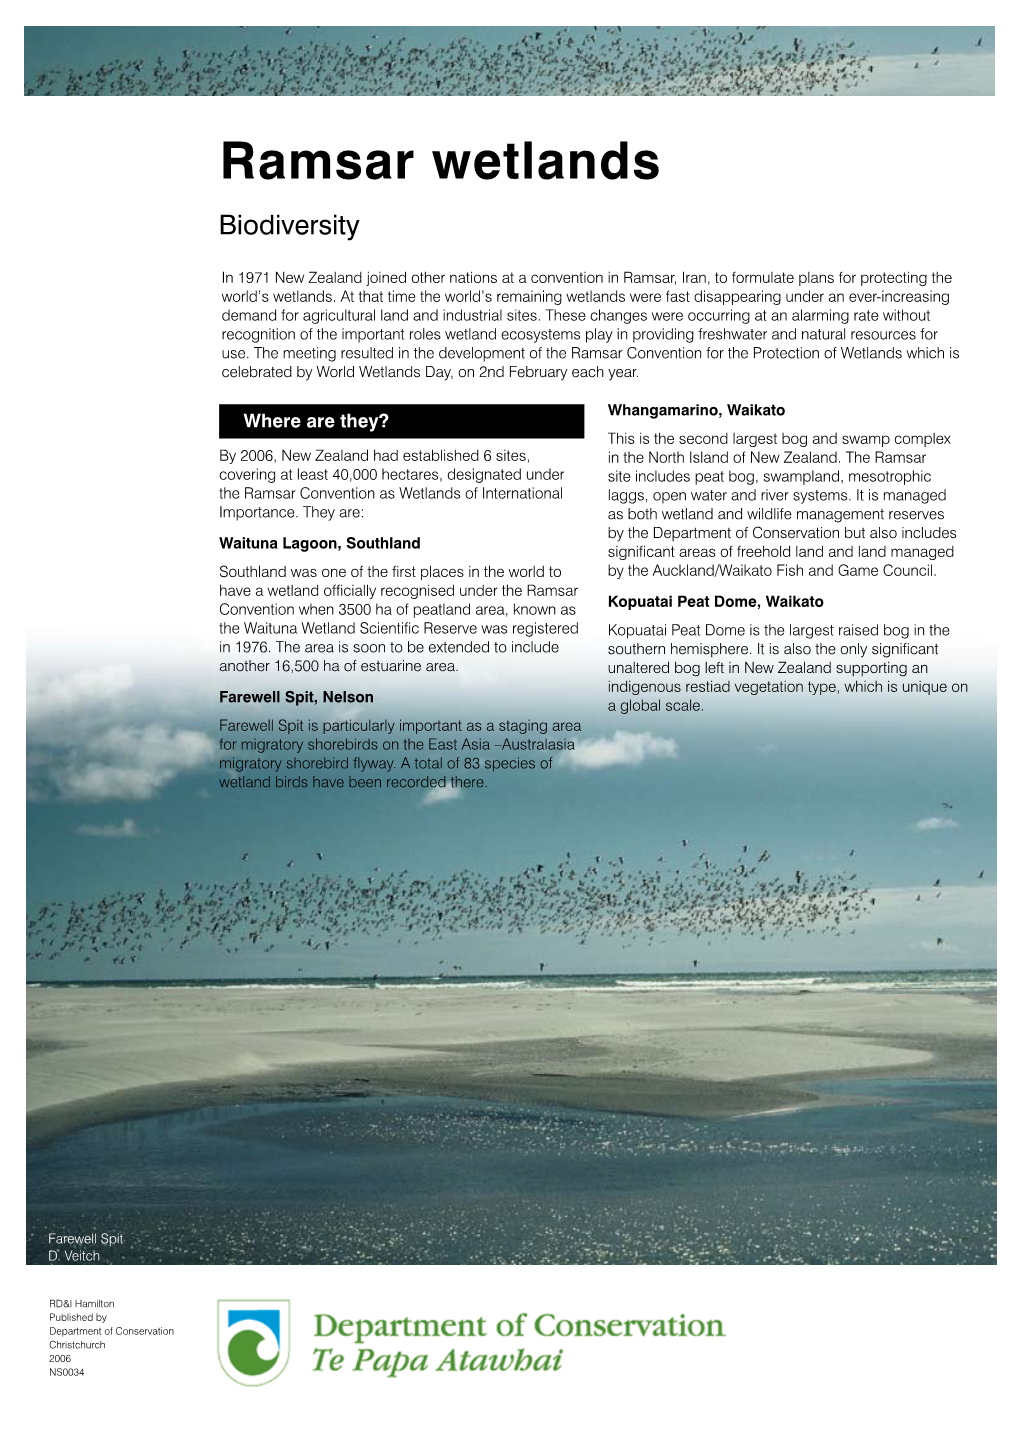 Ramsar Wetlands Biodiversity